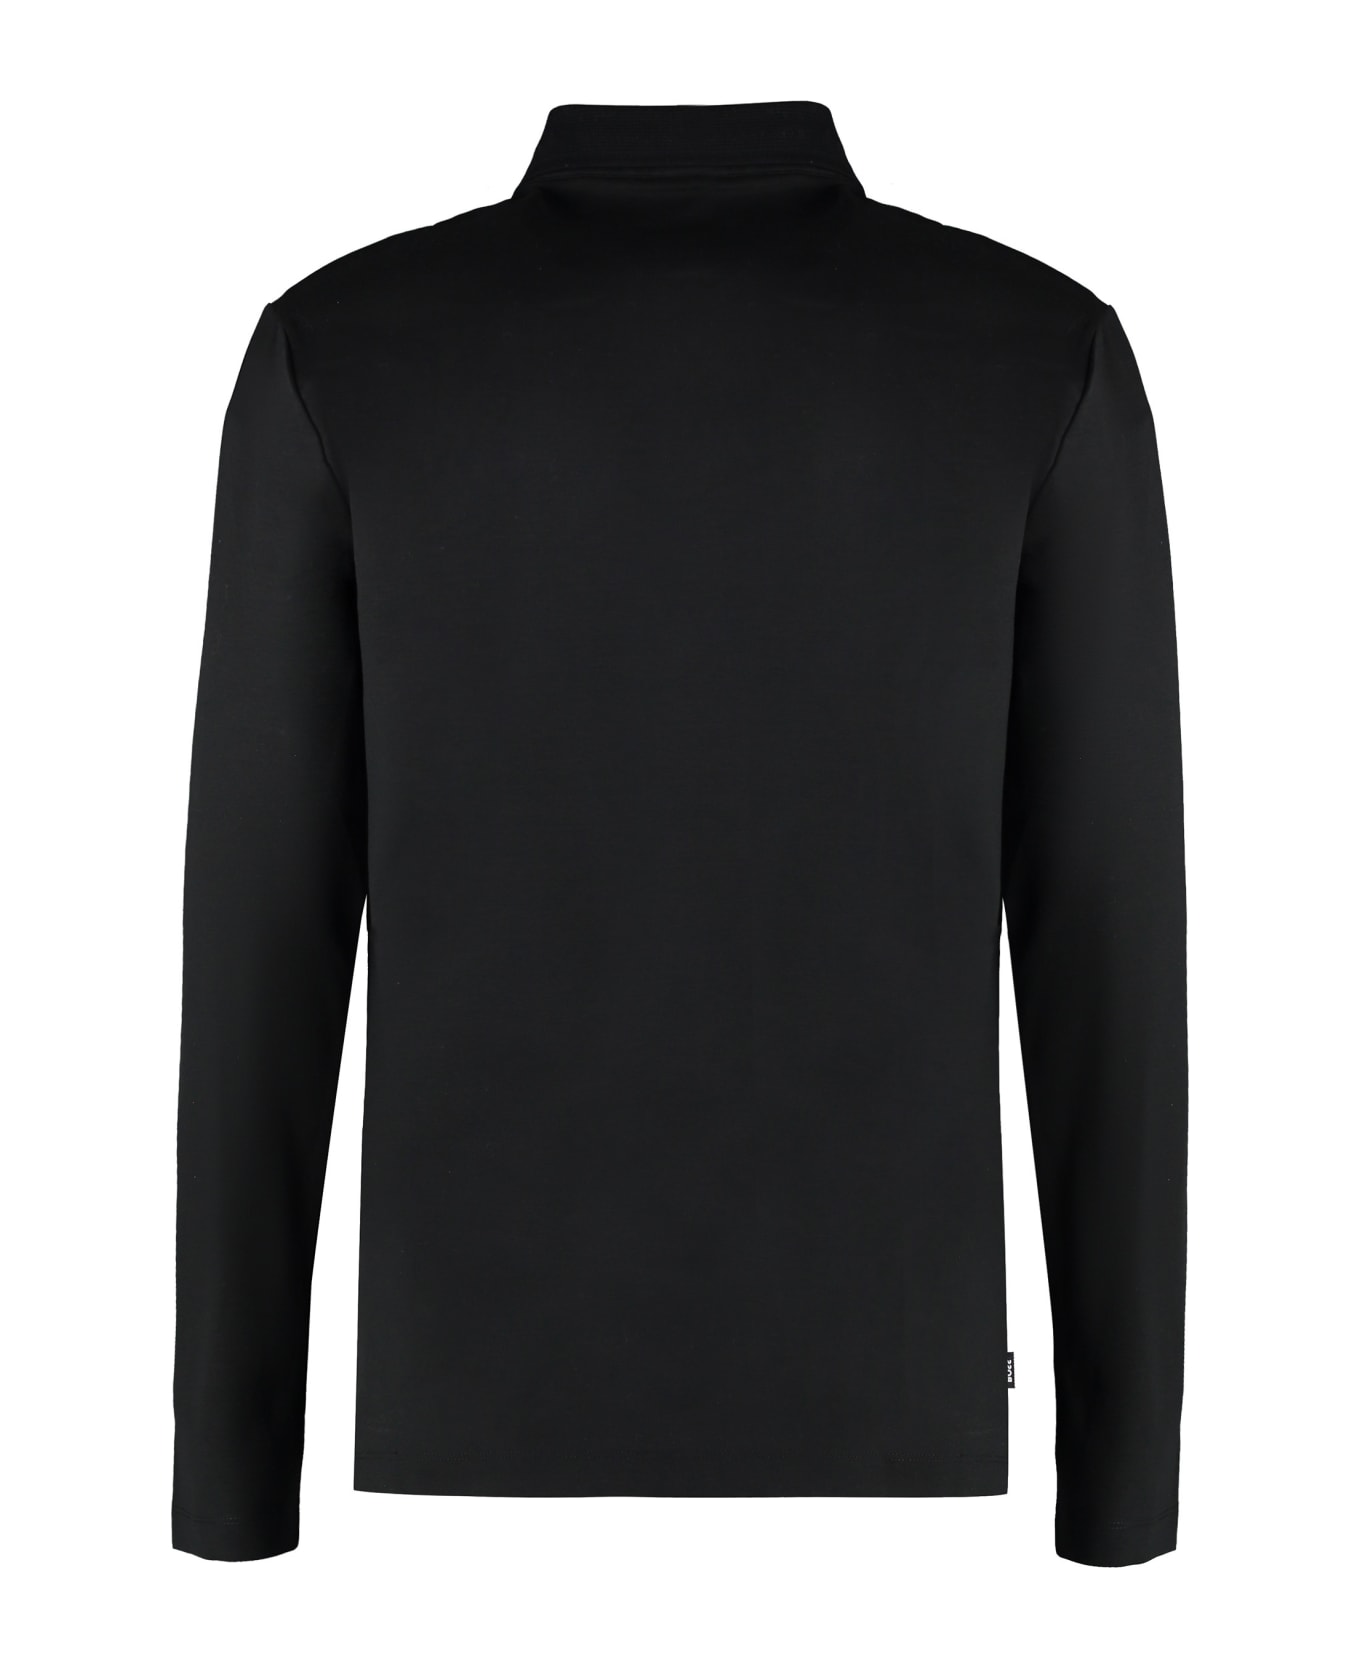 Hugo Boss Long Sleeve Cotton Polo Shirt - black